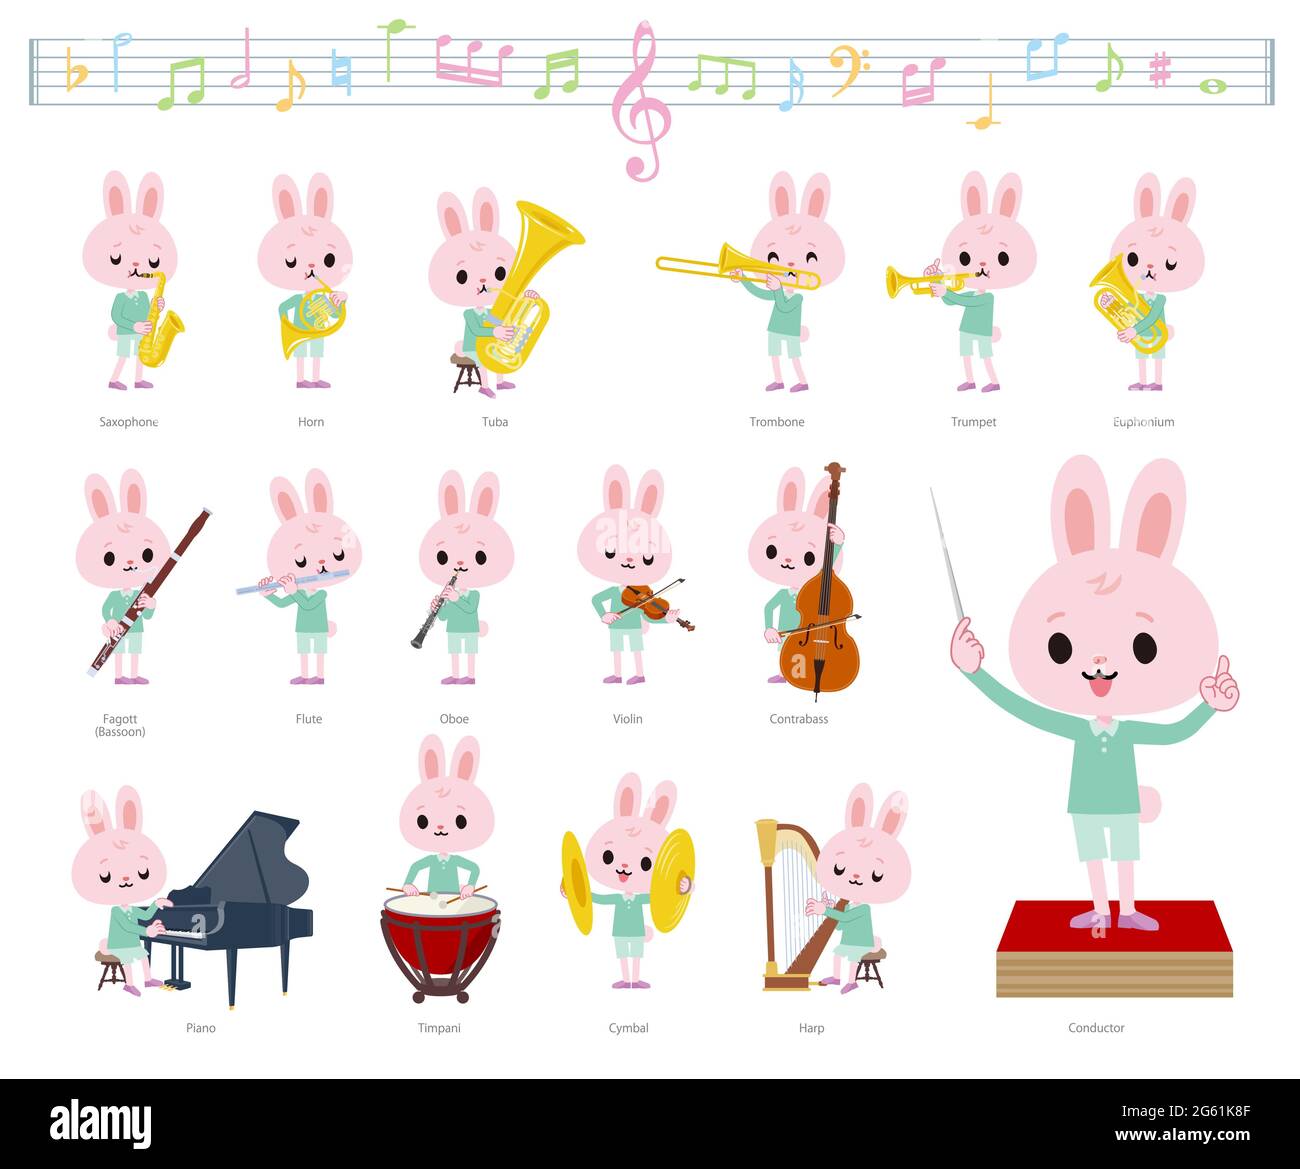 Un jeu de lapin sur des performances de musique classique.c'est l'art vectoriel pour qu'il soit facile à éditer. Illustration de Vecteur